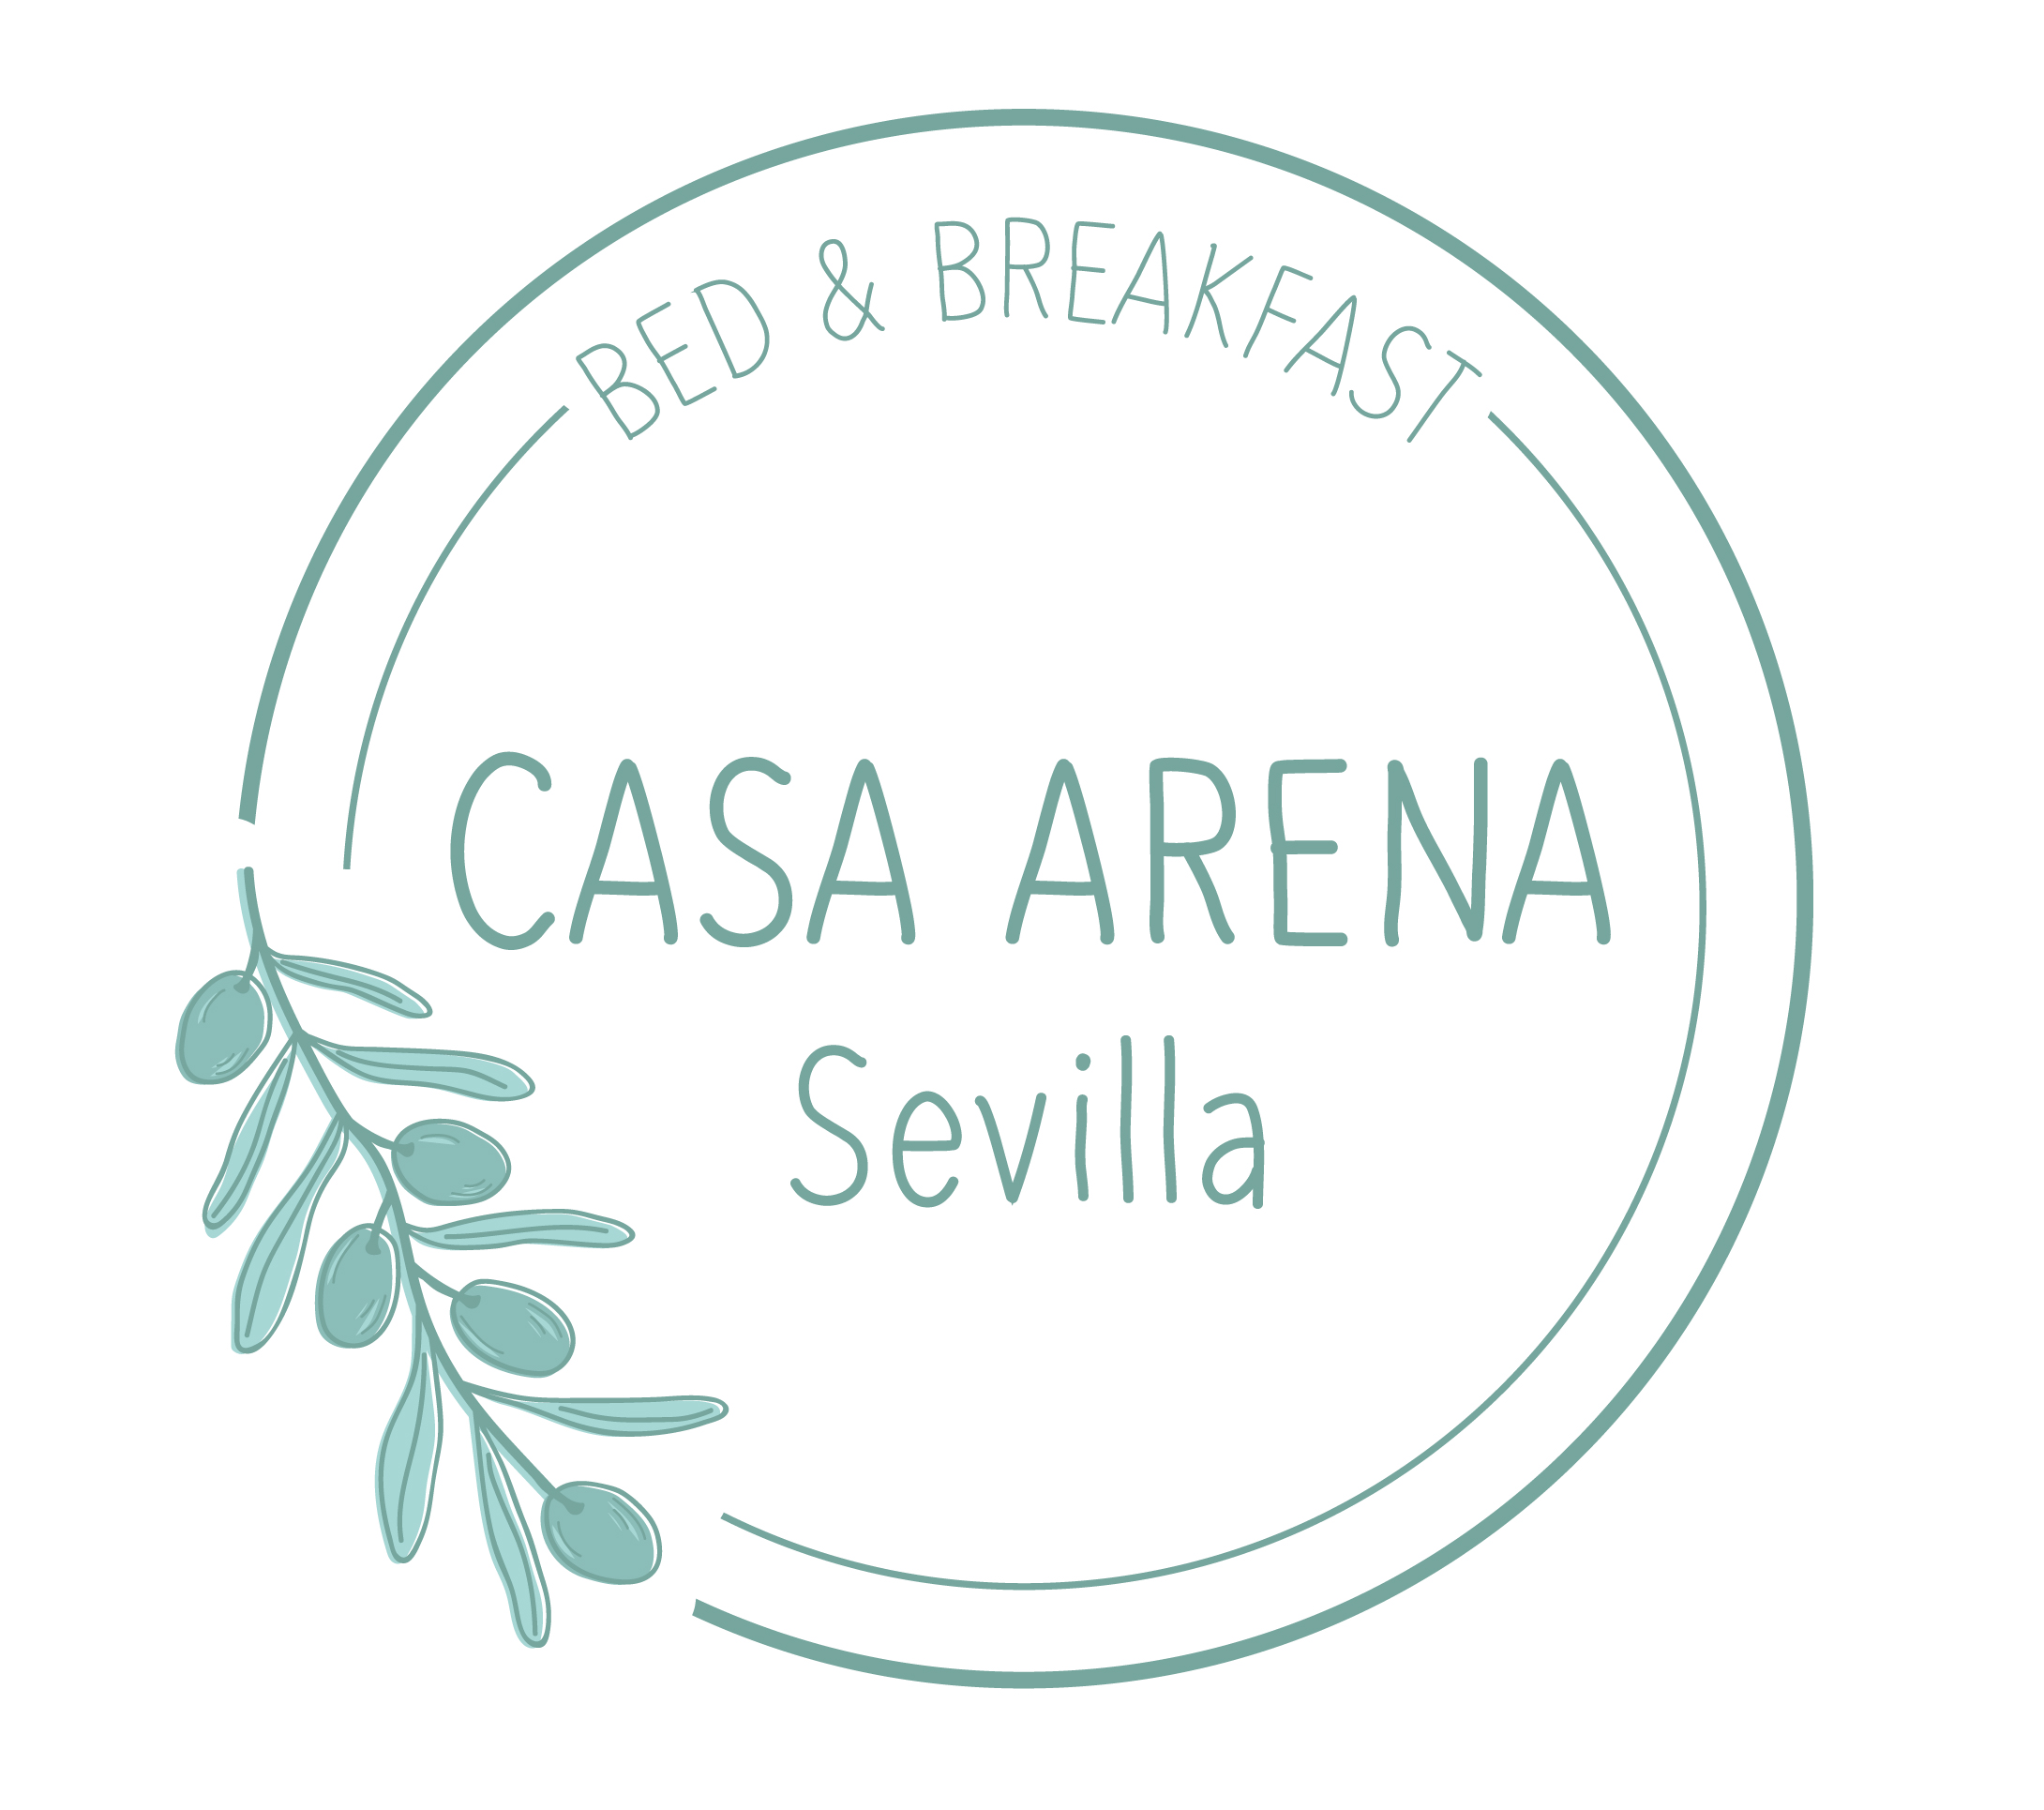 Bed & Breakfast Casa Arena